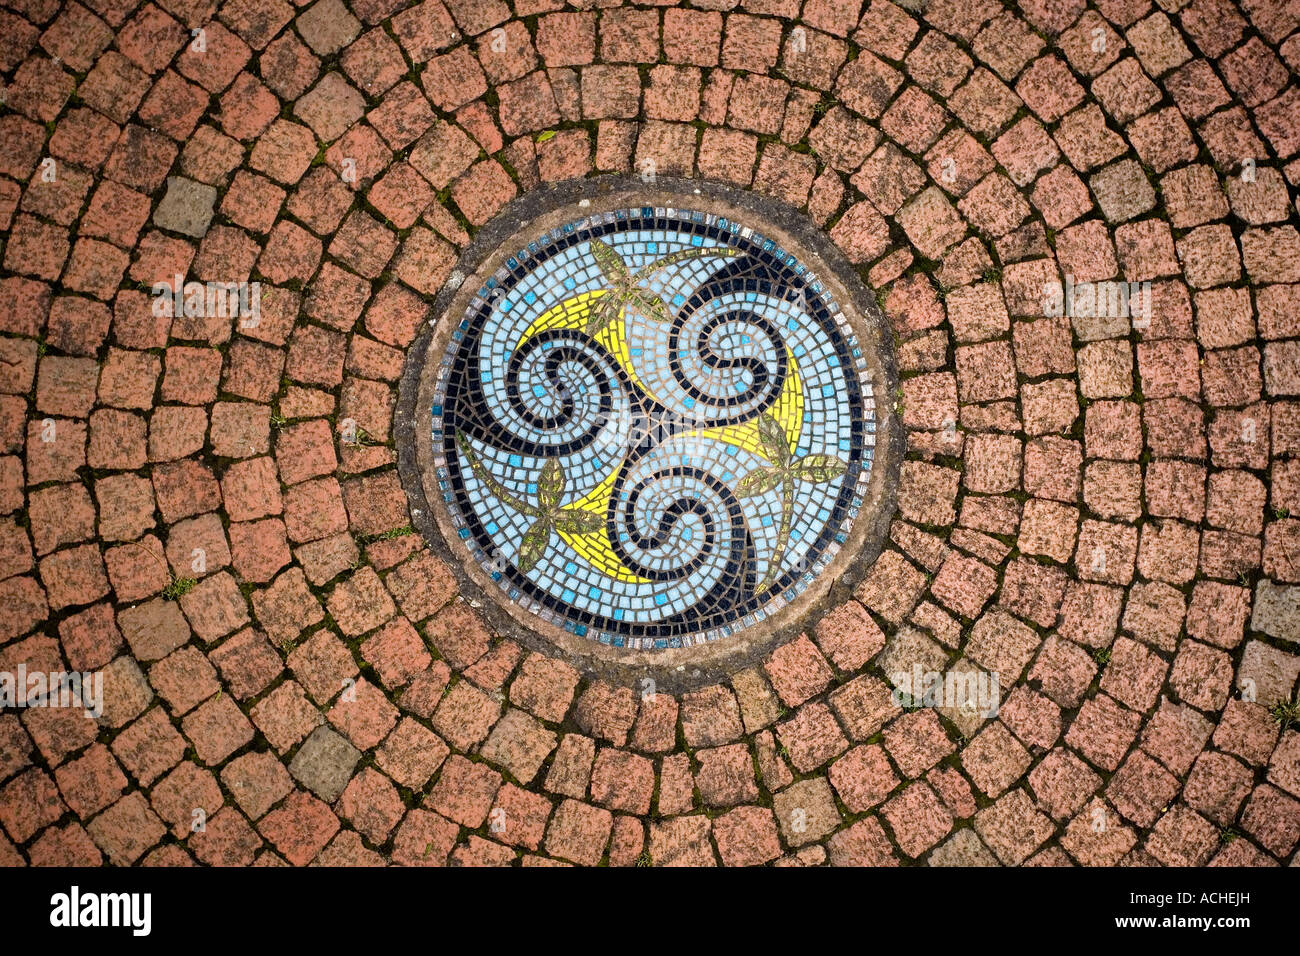 Jardin Celtique circulaire conception de mosaïque dans une voie en brique à Ryton jardins biologiques , Warwickshire, Angleterre Banque D'Images